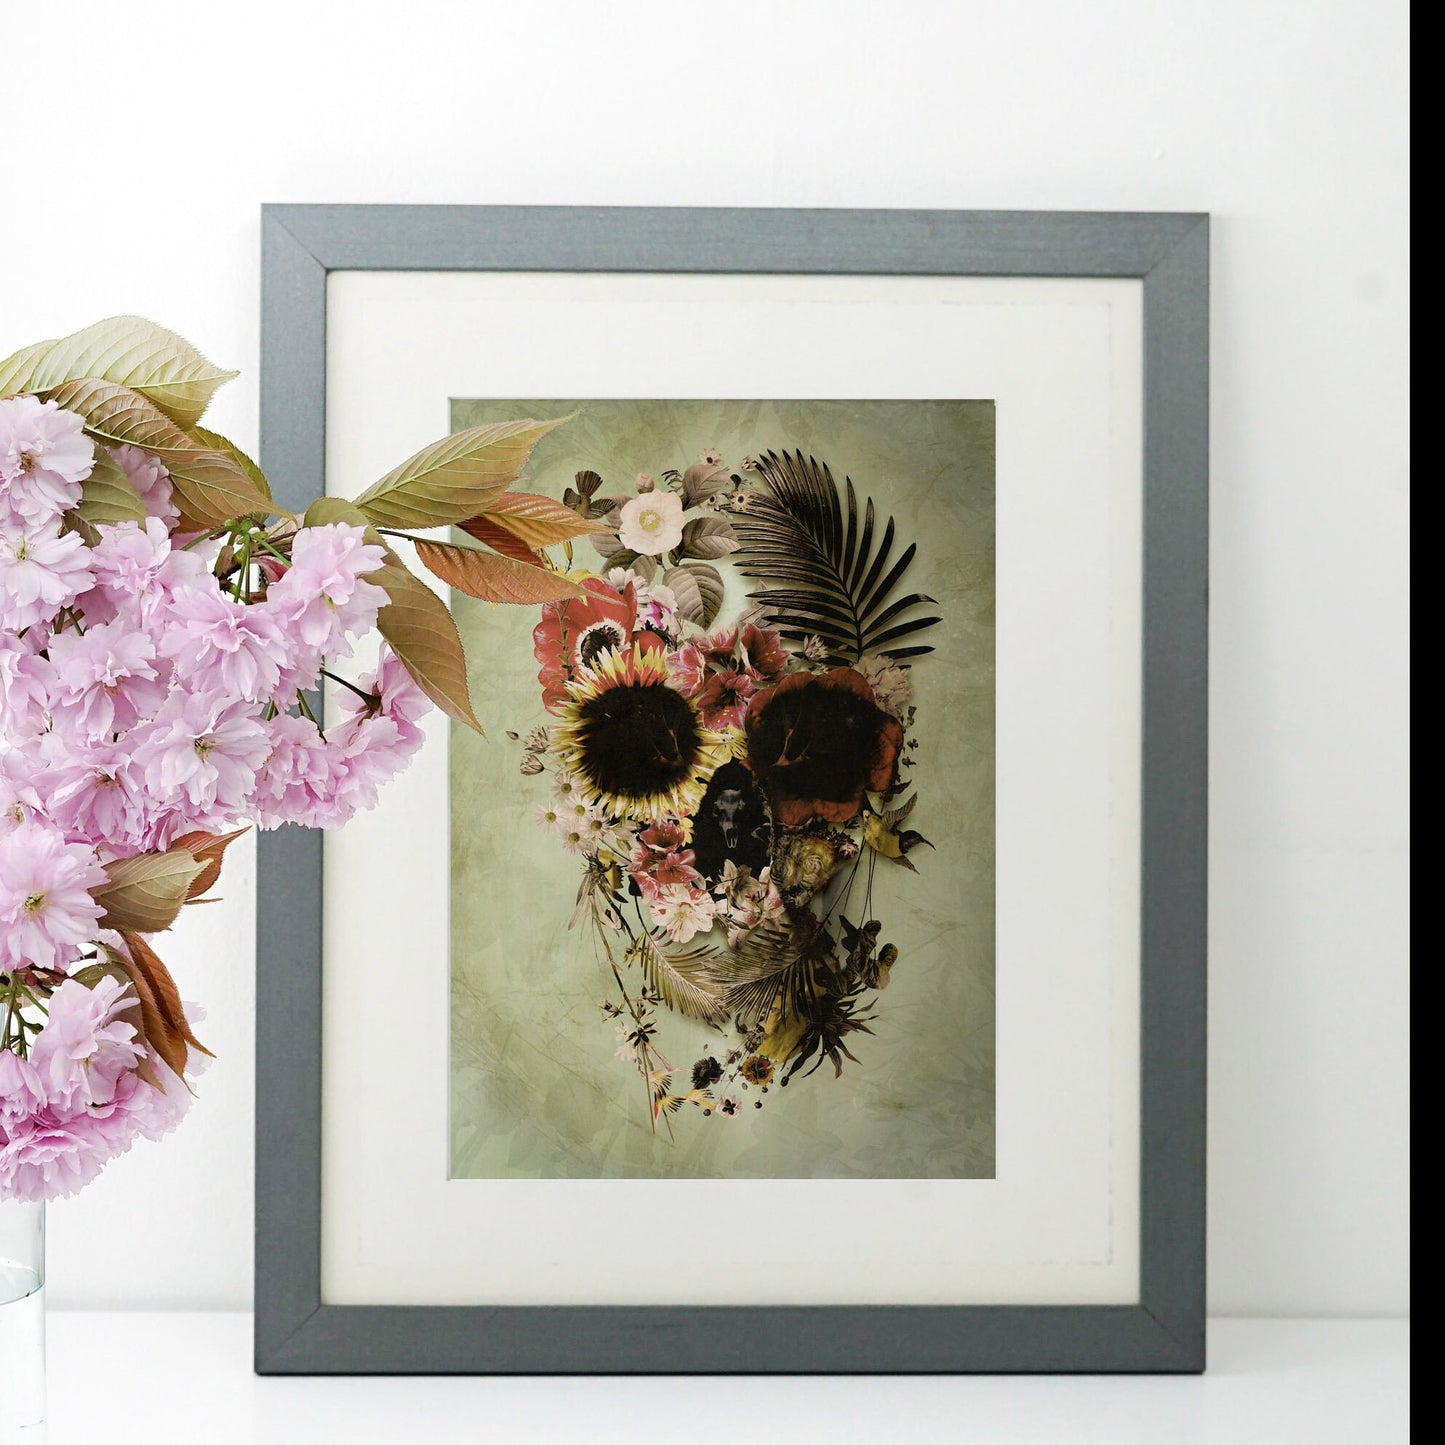 Flower Skull Art Print, Floral Skull Instant Download Printable Wall Art, Flower Skull Home Decor Gift, Downloadable Skull Poster Wall Decor